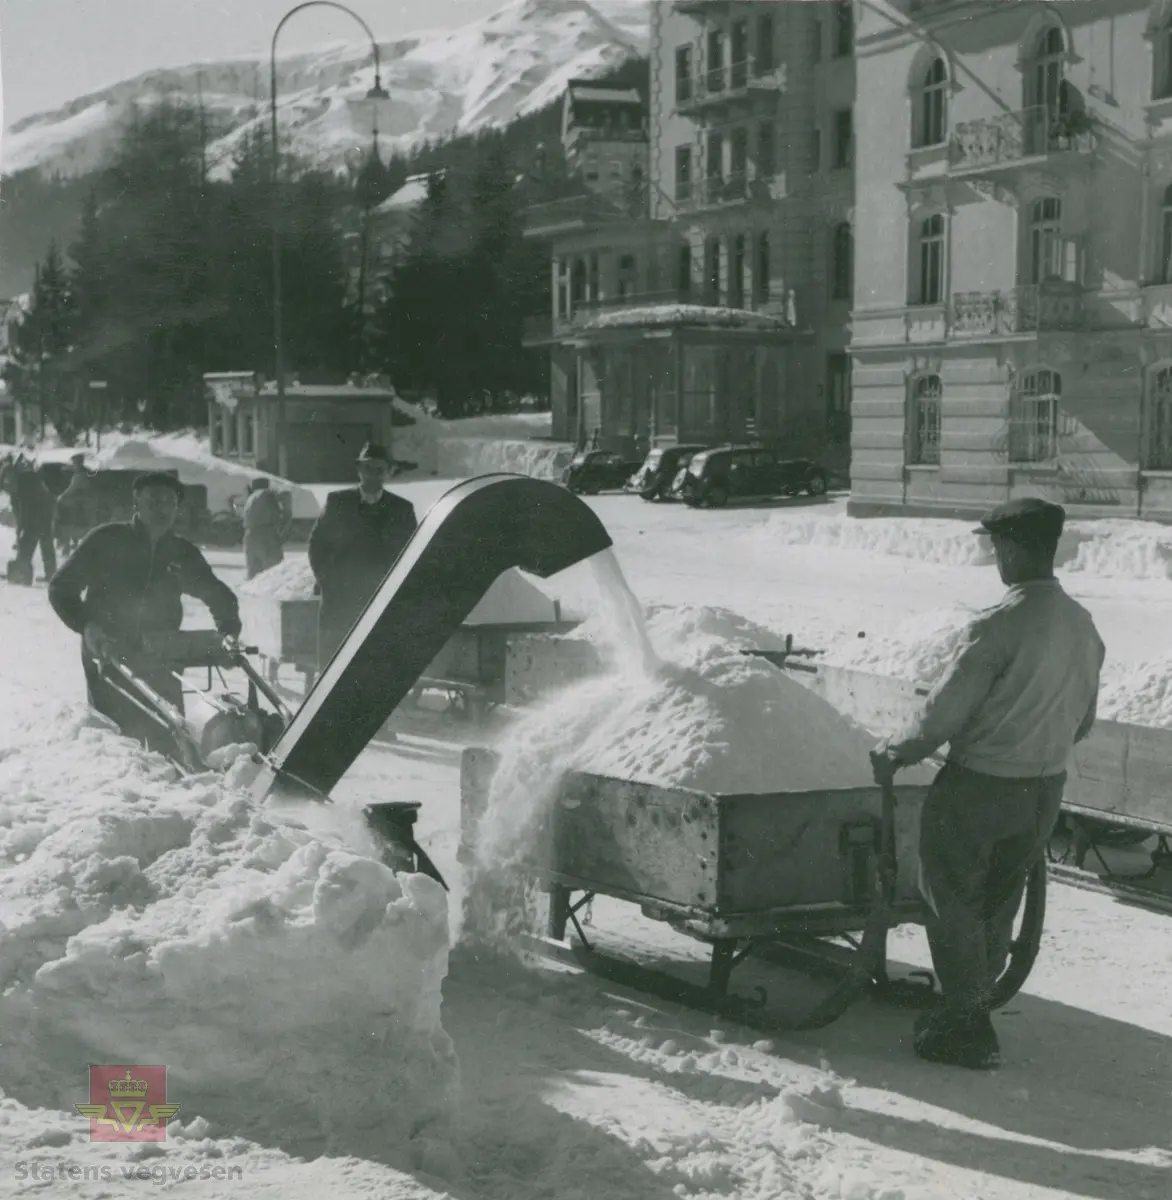 Demonstrasjon av Rolba Snow-Boy 2003 snøfreser. Snøfresing og rydding av snø i gatene i Davos i Sveits 1949. Snøen ble samlet opp på en slede og fraktet bort med håndkraft.